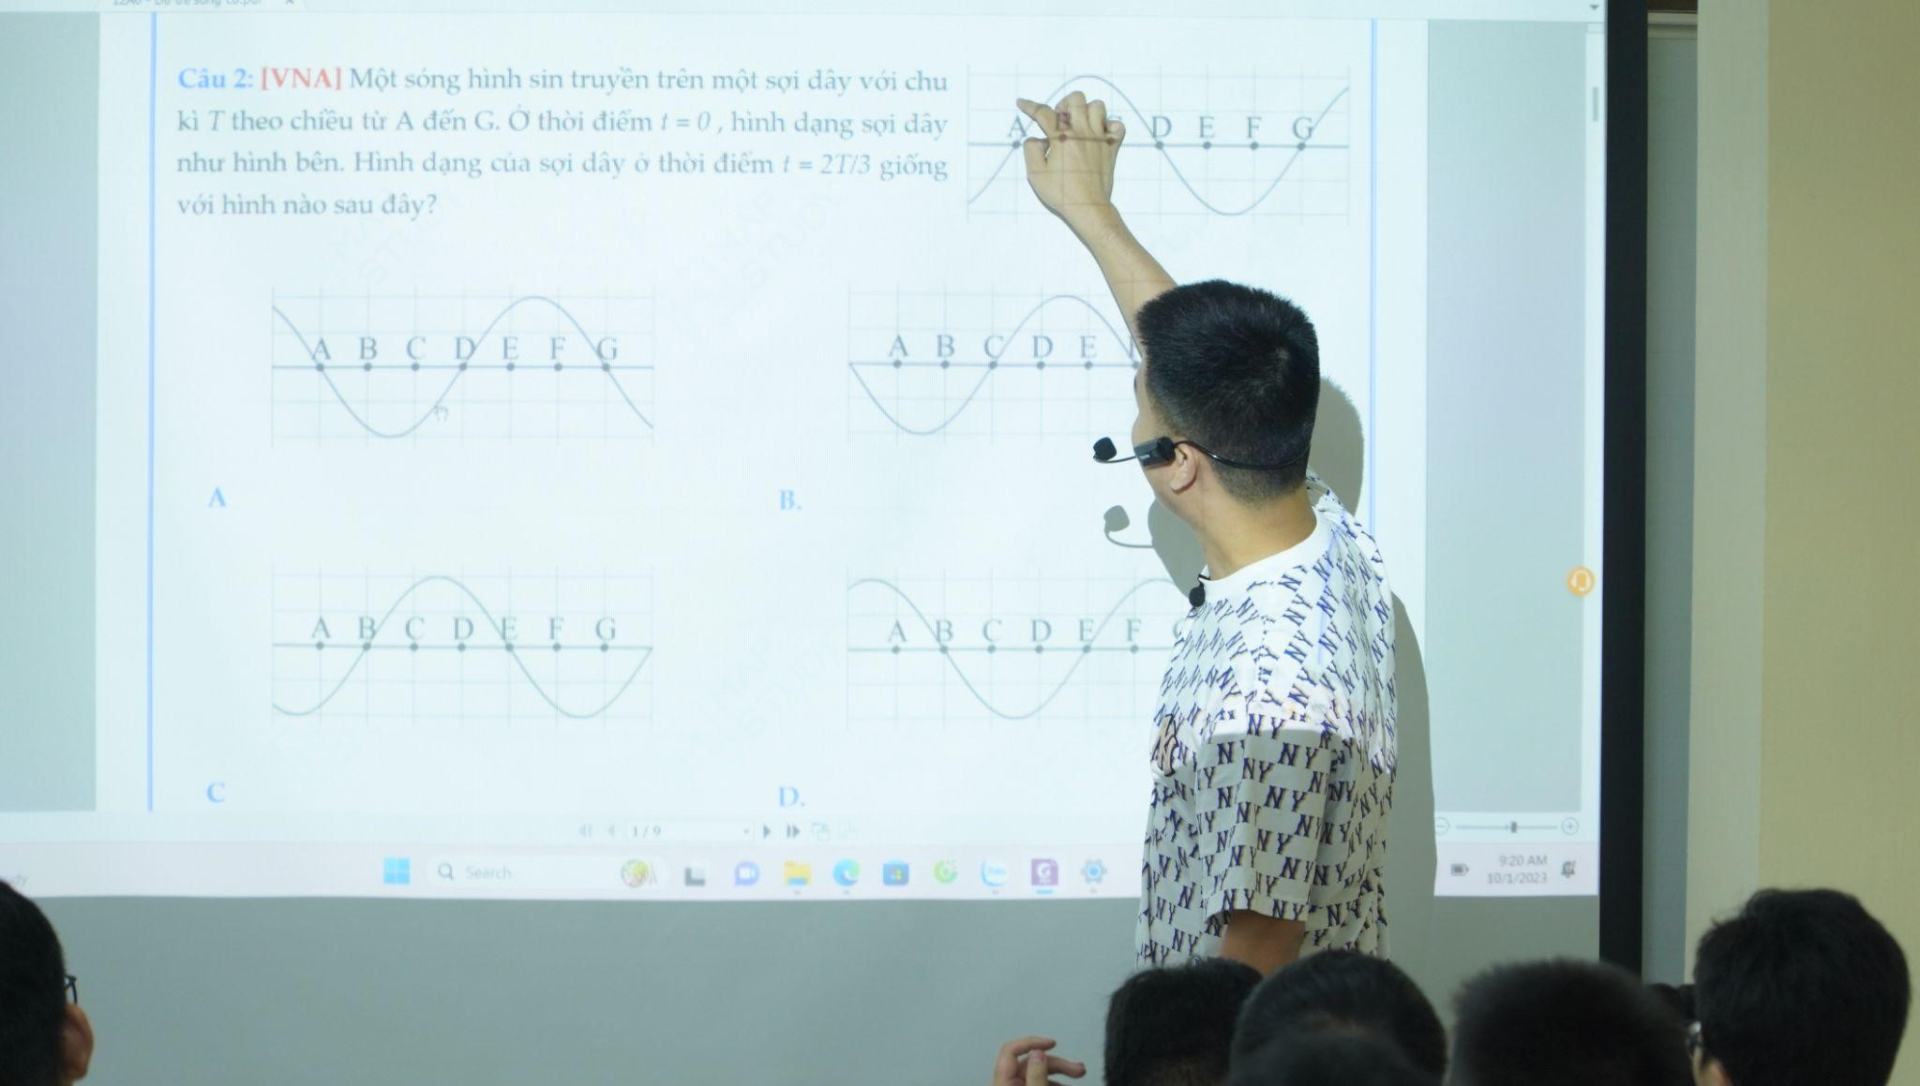 Thầy giáo Vũ Ngọc Anh chia sẻ những trăn trở về việc dạy học trực tuyến trong thời đại công nghệ - ảnh 4